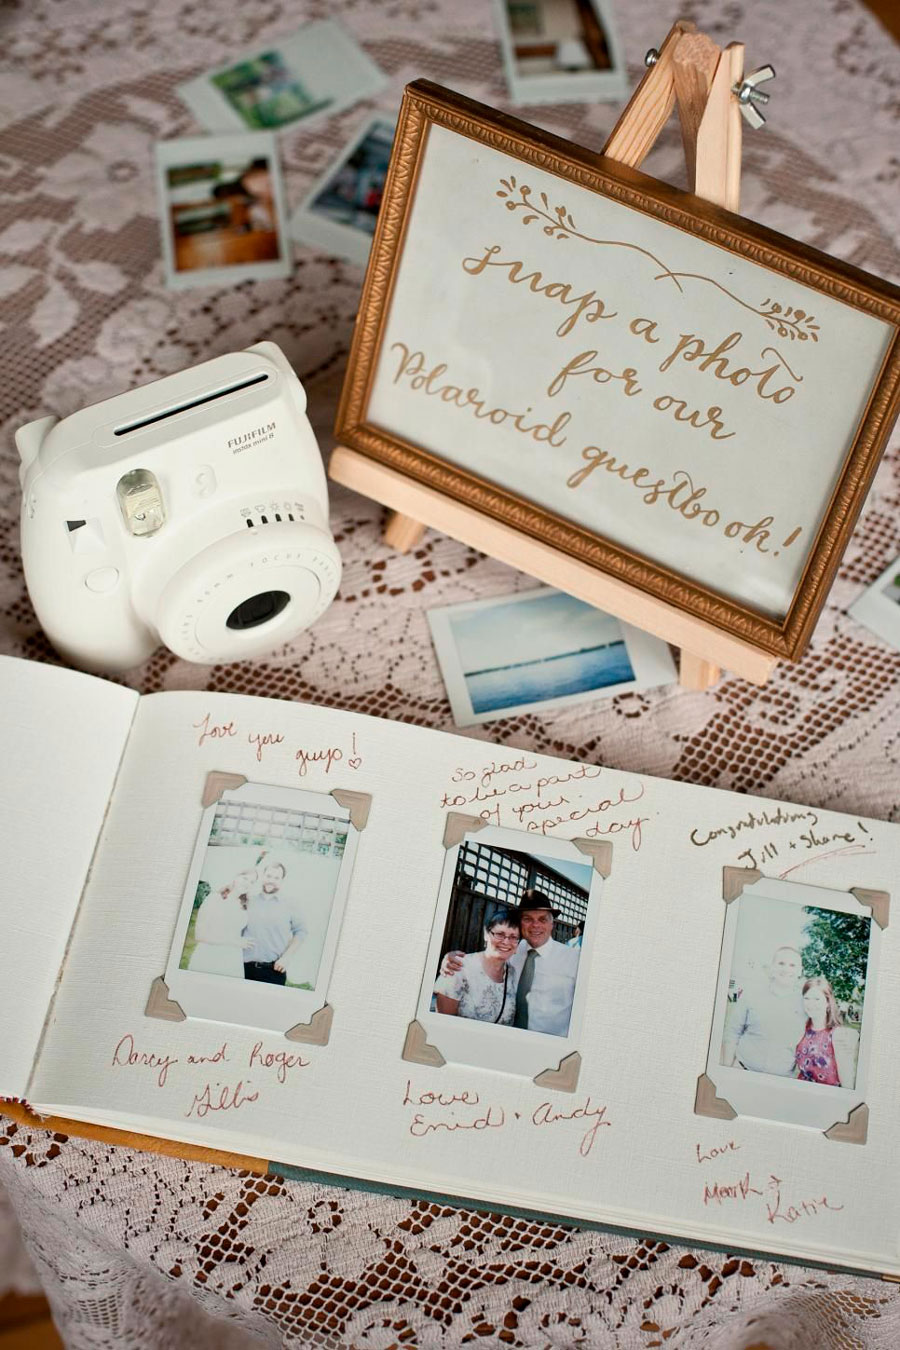 cámara polaroid con invitación a tomar una foto de los invitados y dejarla con un mensaje